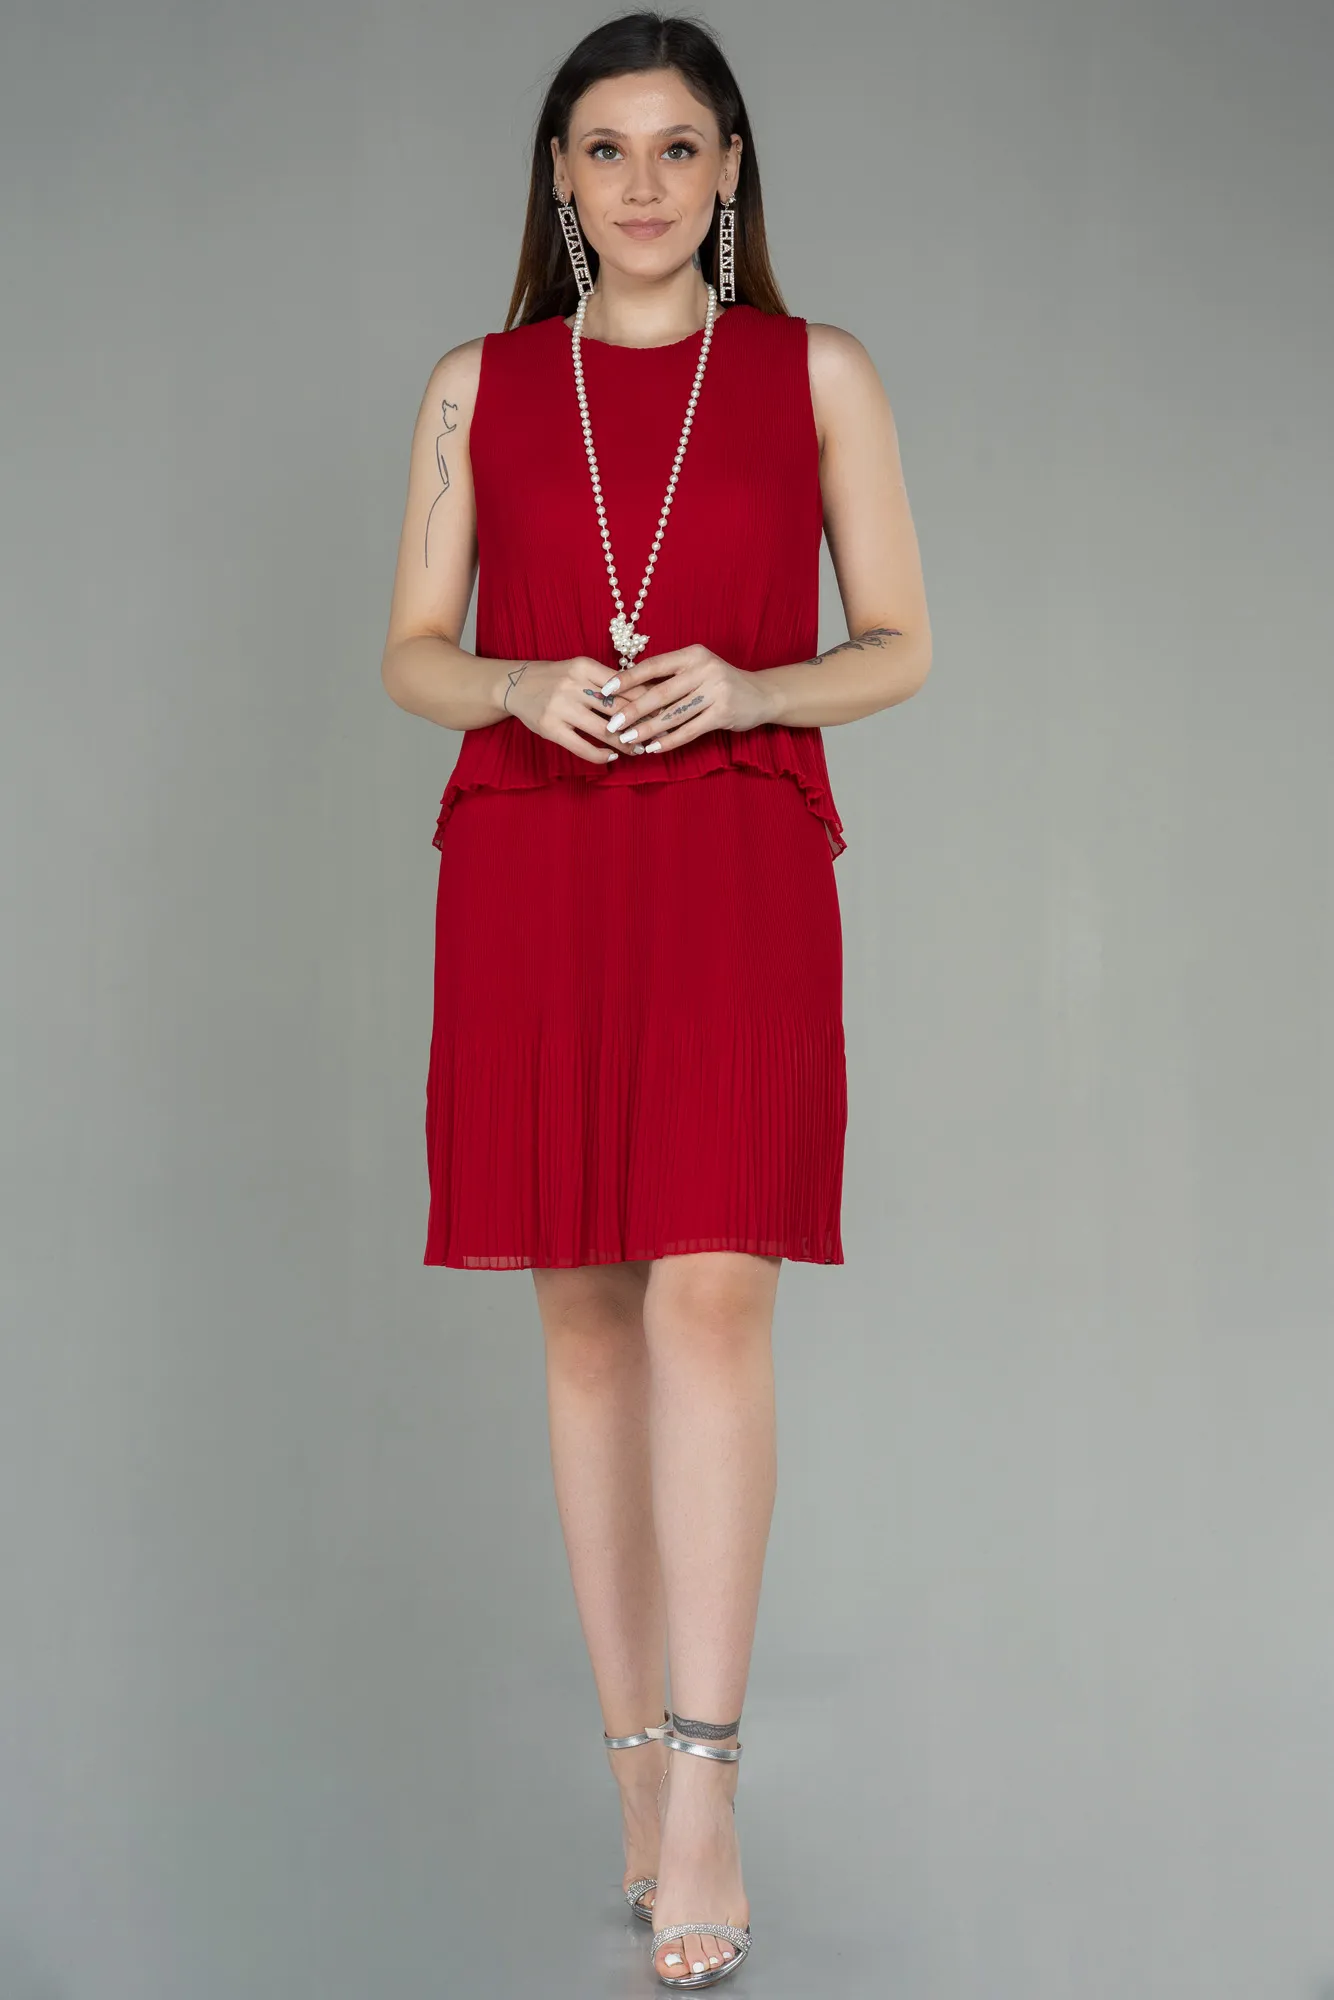 Red-Short Invitation Dress ABK782